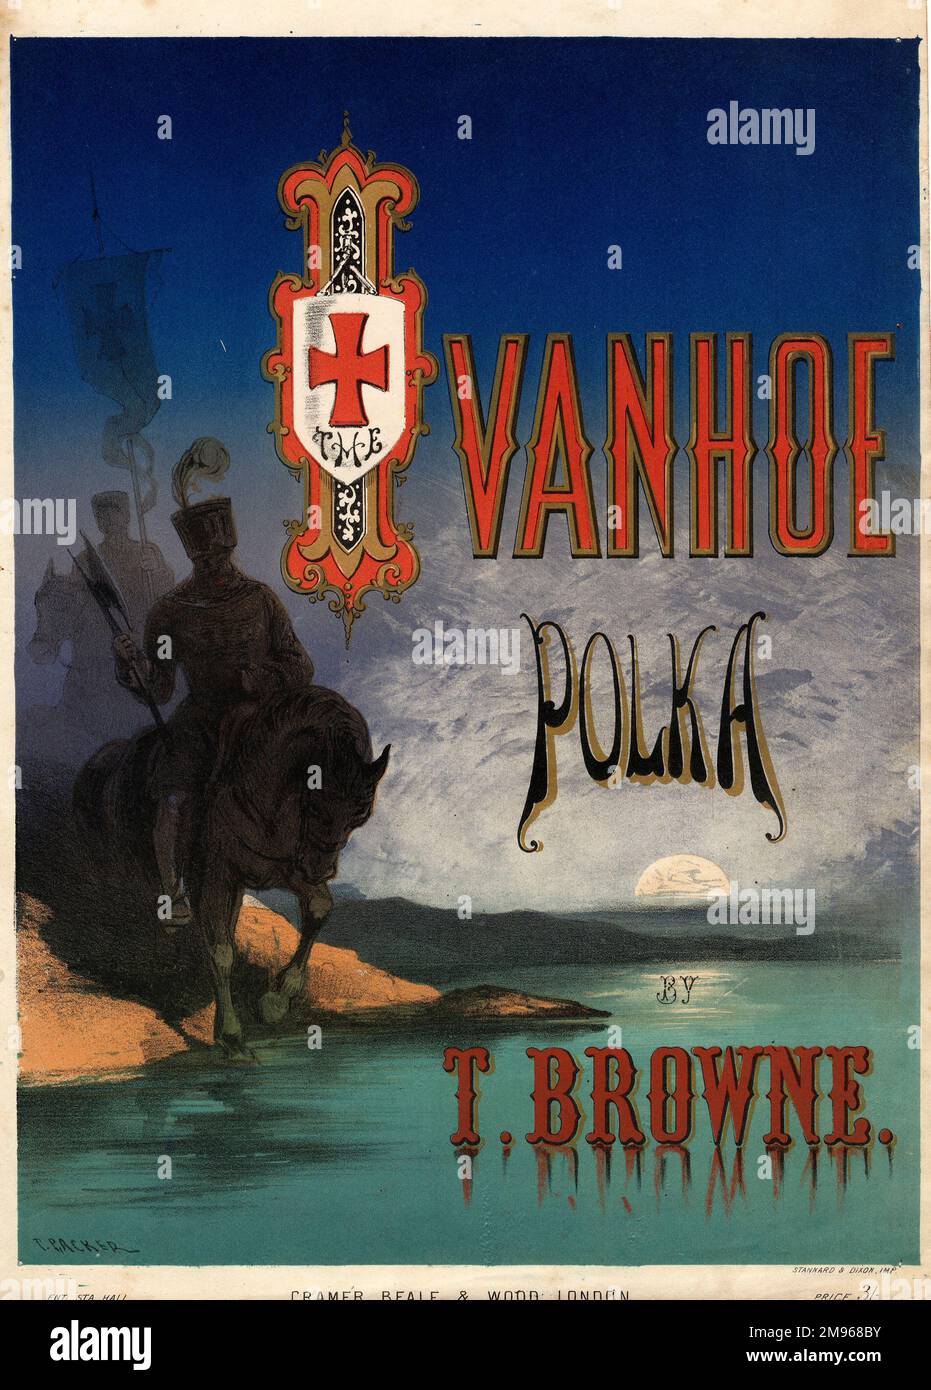 Couverture d'une feuille de musique de l'Ivanhoé Polka, par Thomas Browne, représentant deux cavaliers médiévaux en armure sur la rive d'une rivière au clair de lune, basée sur le roman de Sir Walter Scott. Banque D'Images